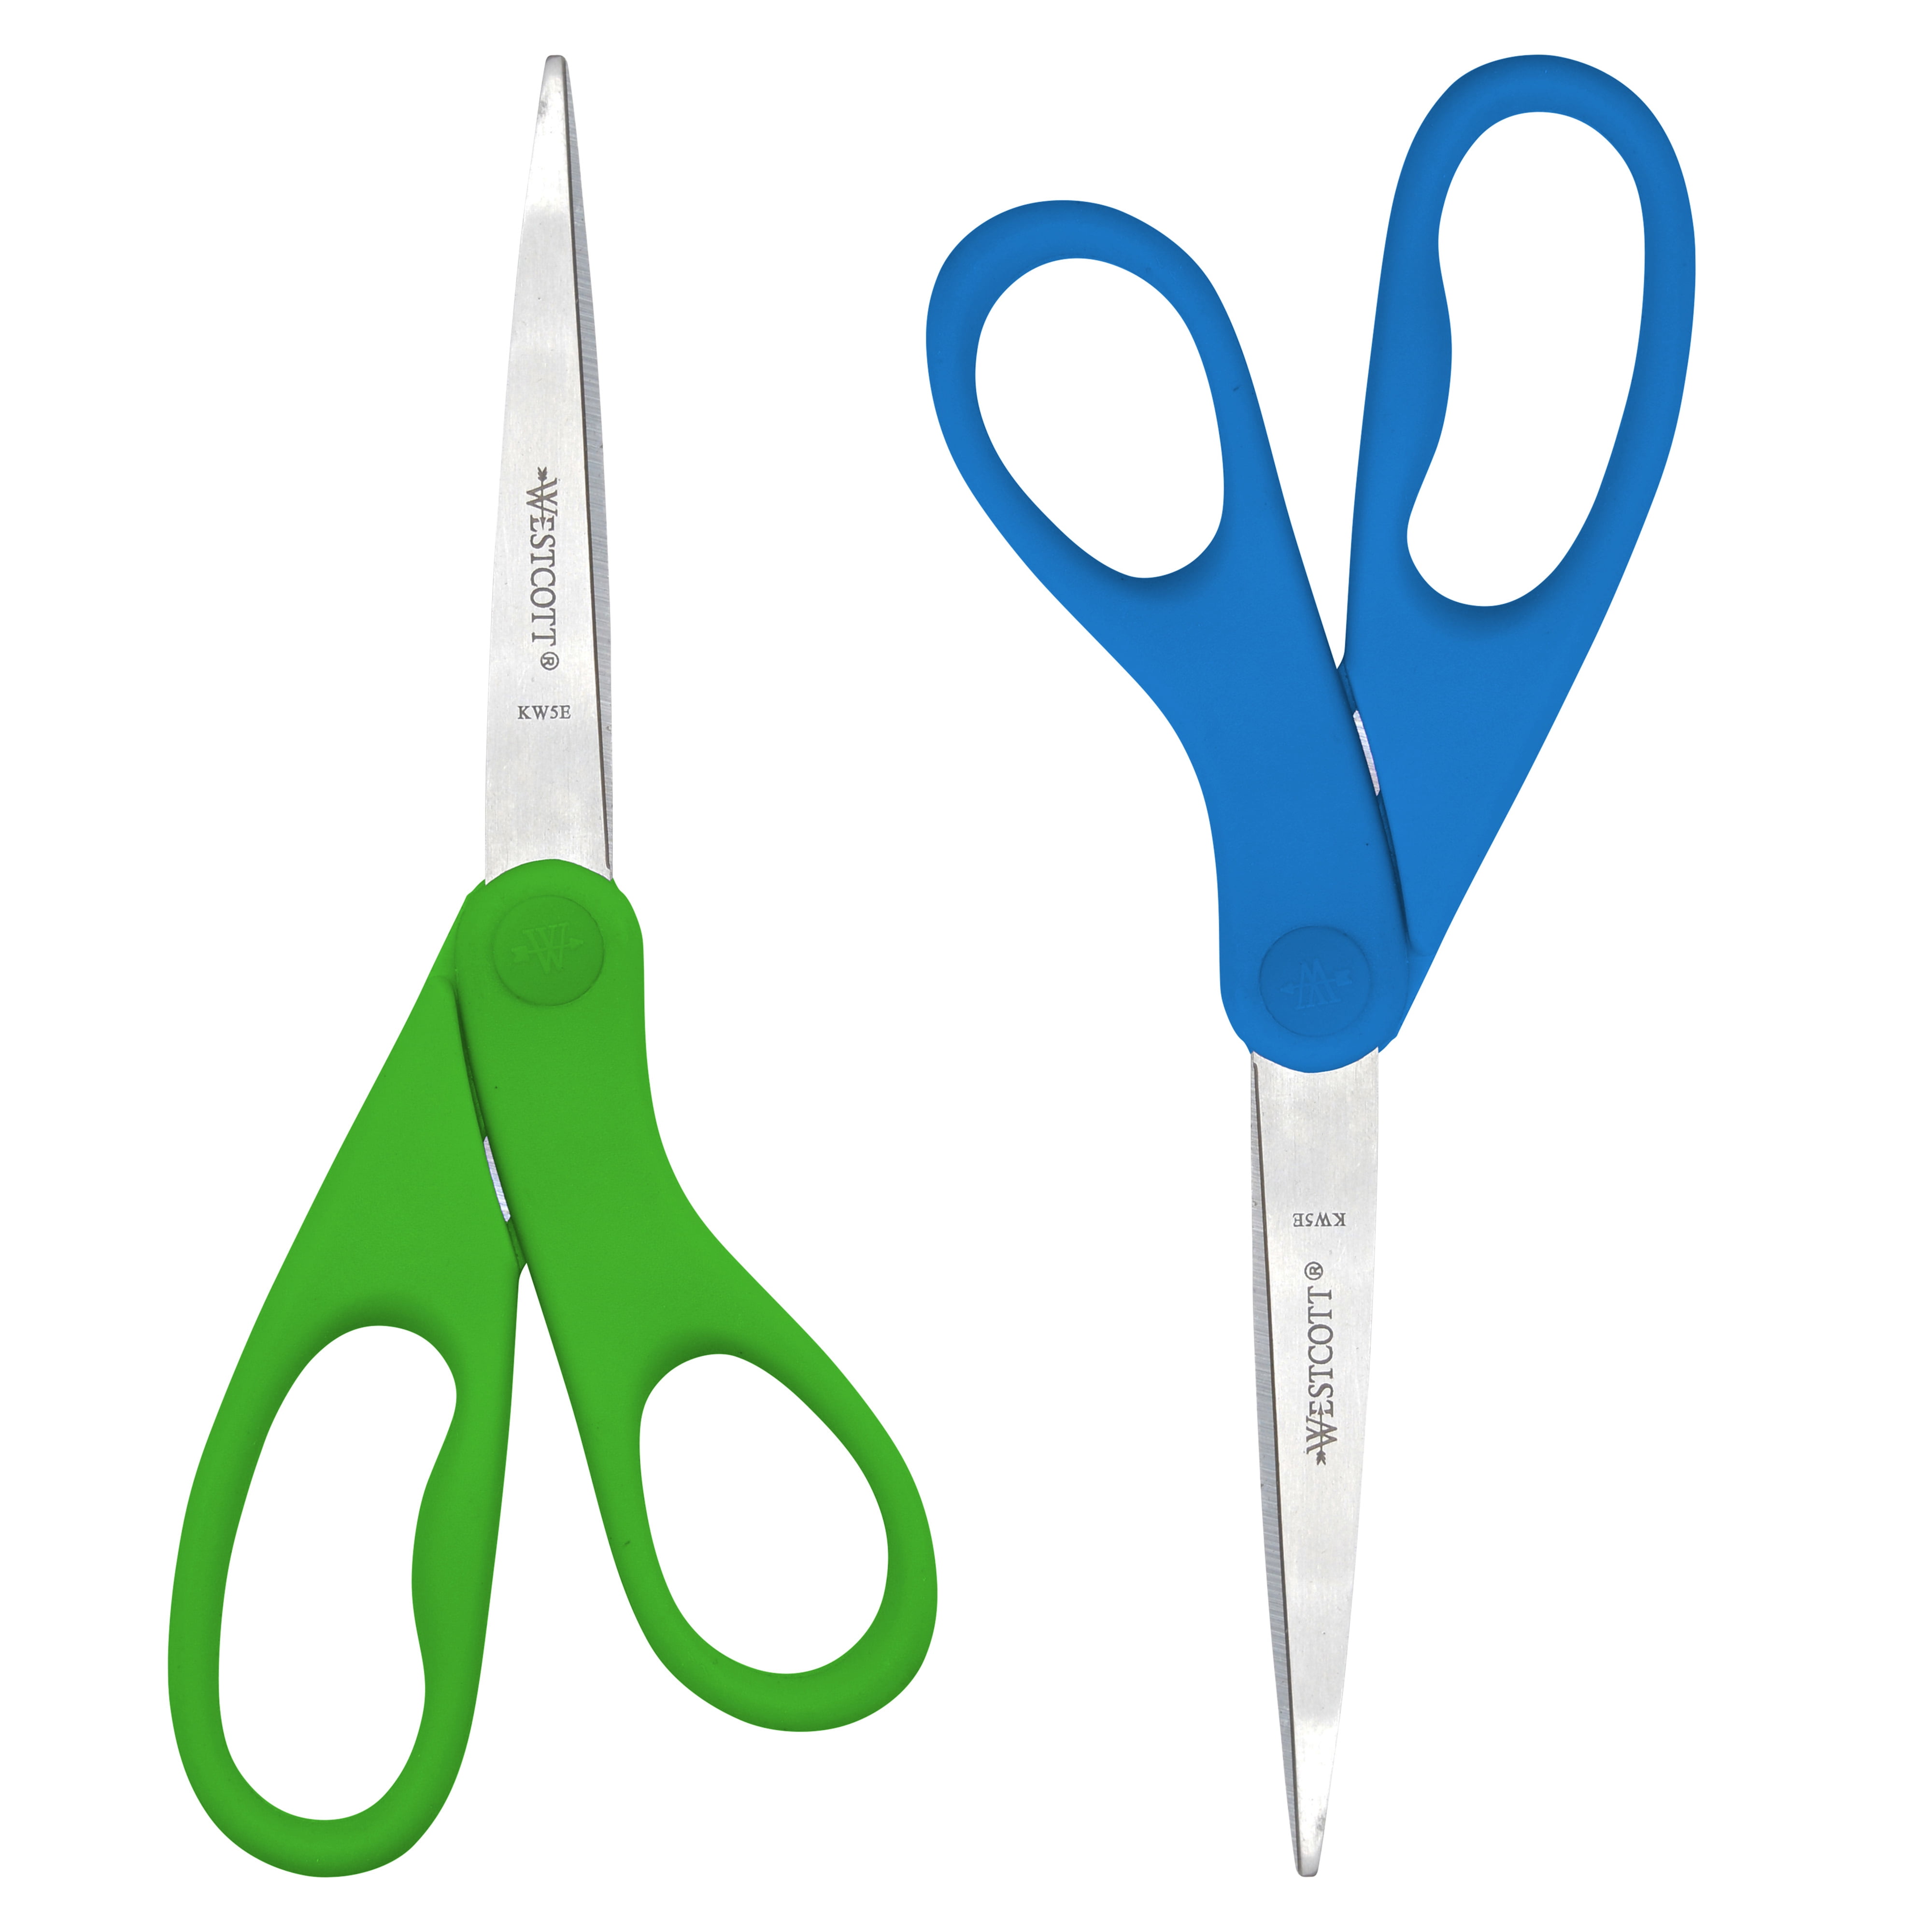 Westcott Preferred Line Stainless Steel Scissors 7" Long Blue Acm43217 43217 for sale online 